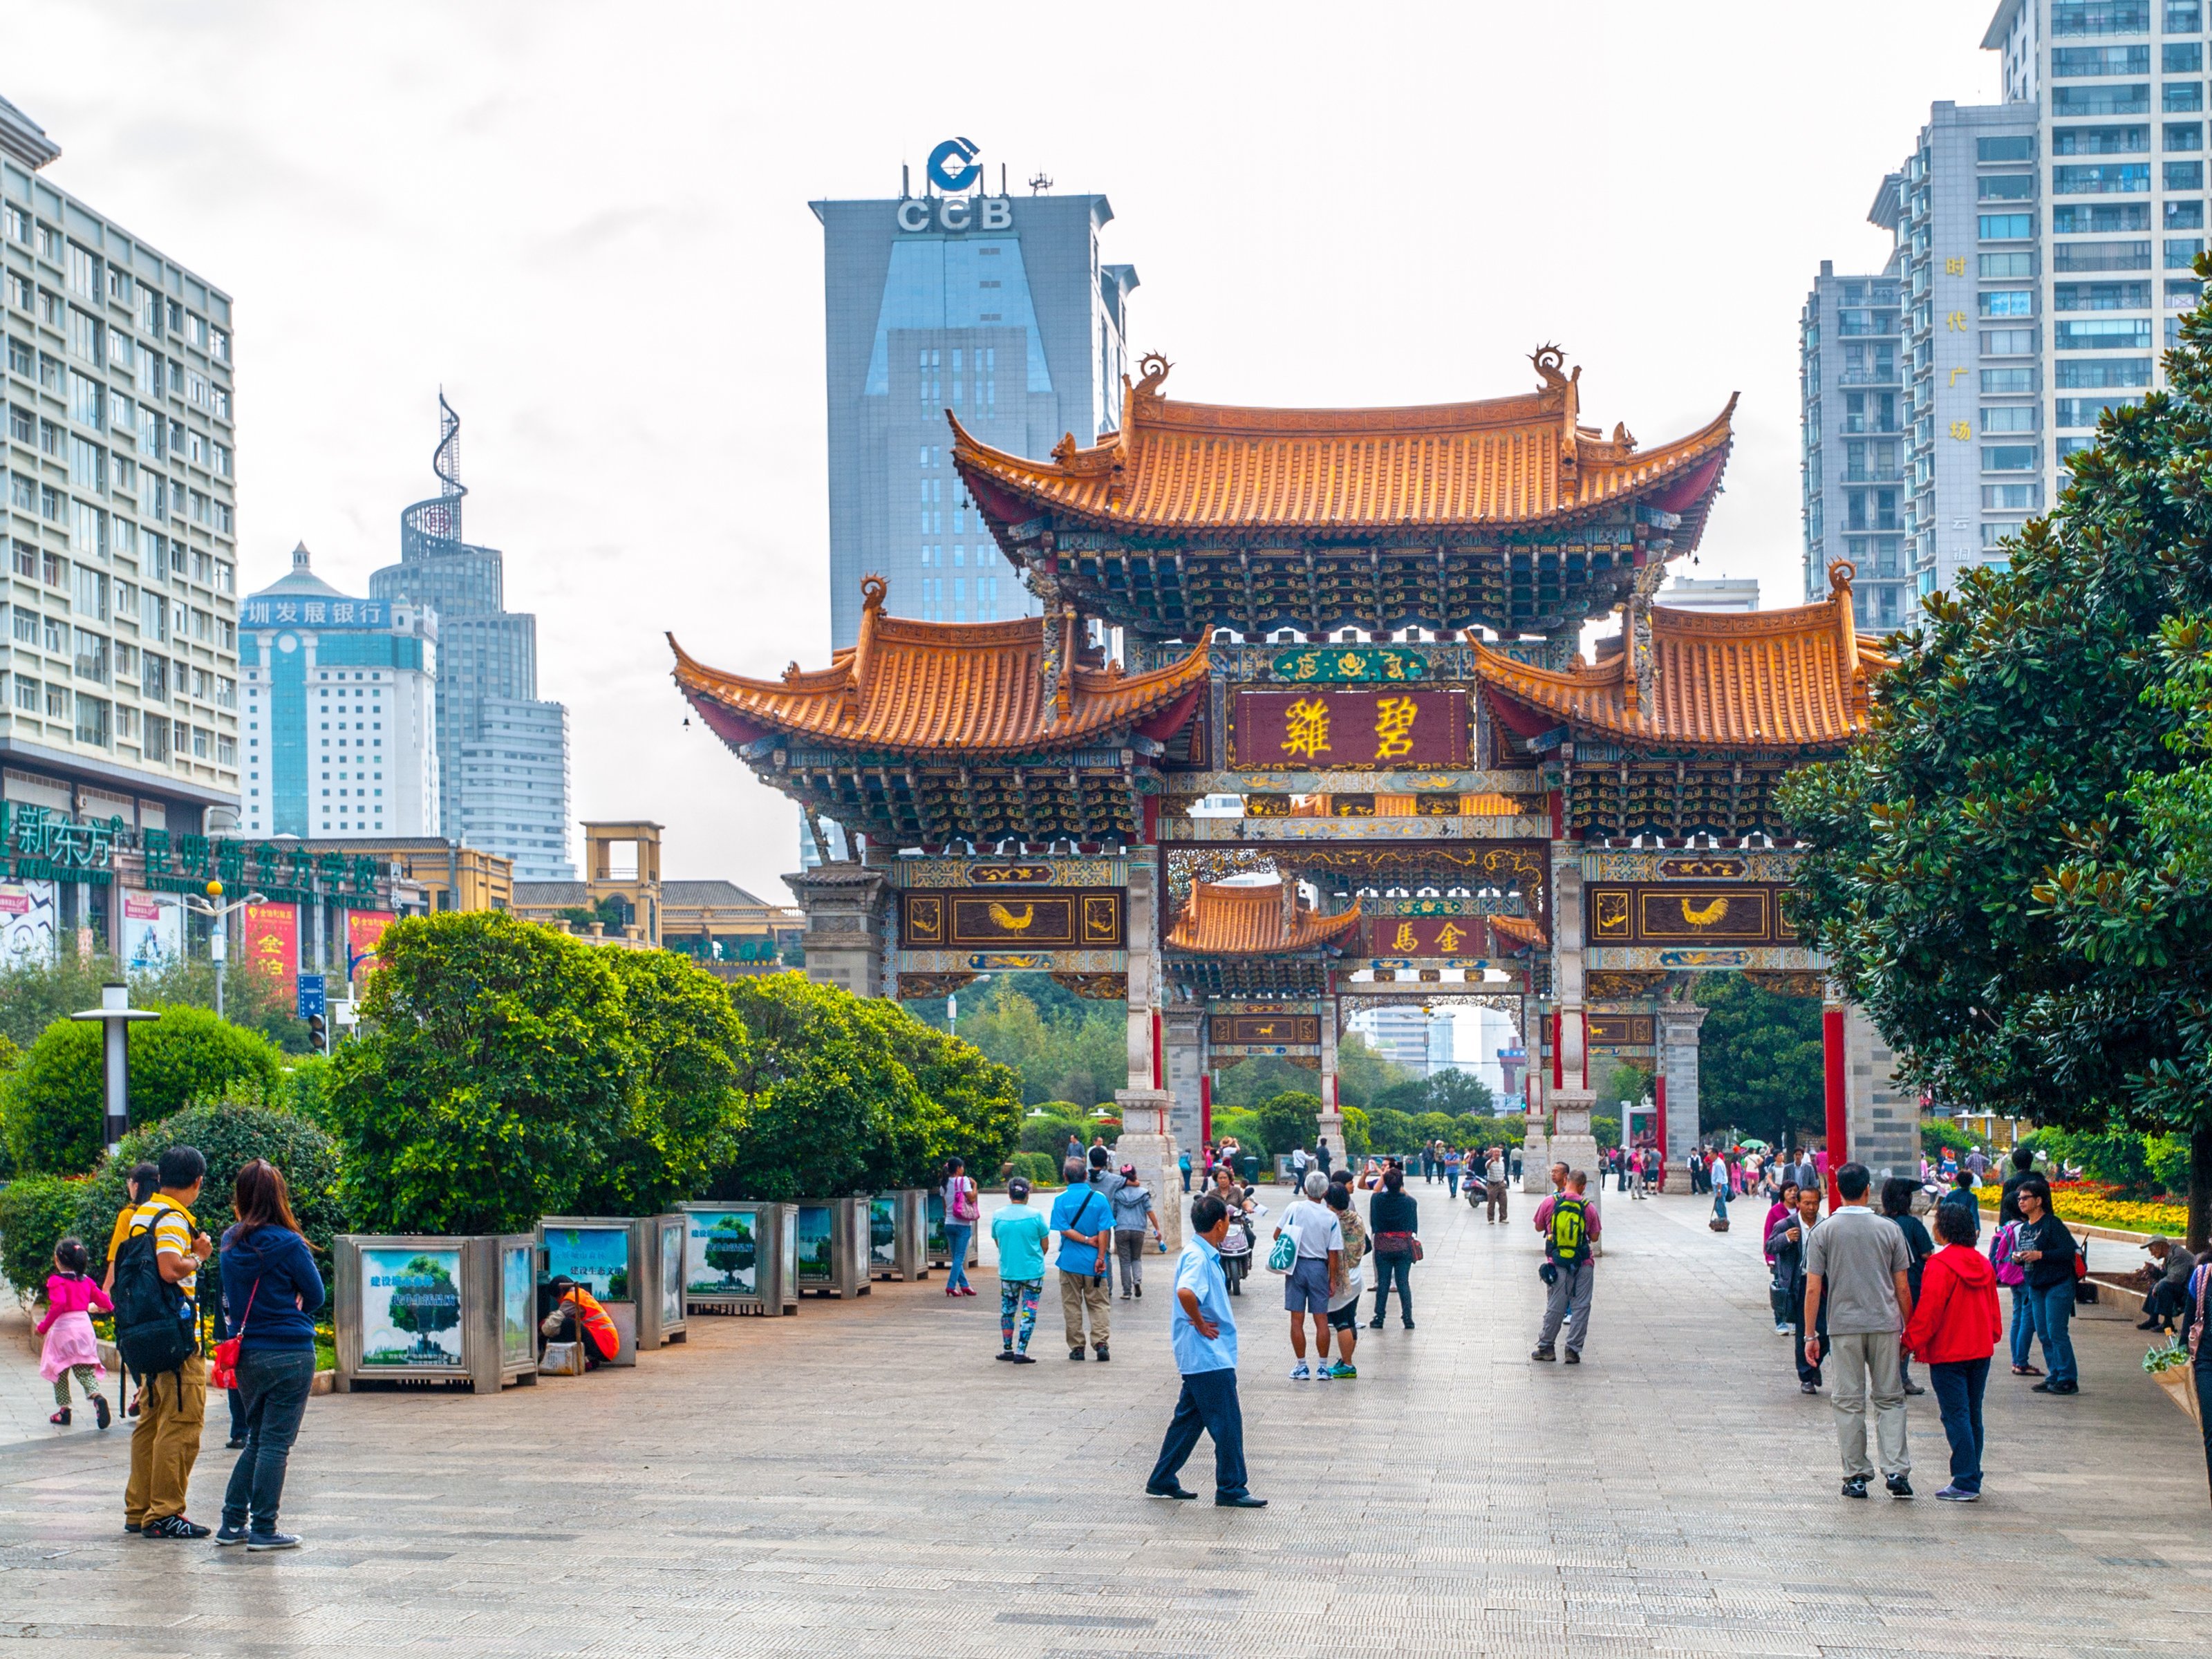 Arco de Kunming. Puerta tradicional china y edificios modernos del centro de la ciudad, Kunming, provincia de Yunnan, China. Fuente: Shutterstock